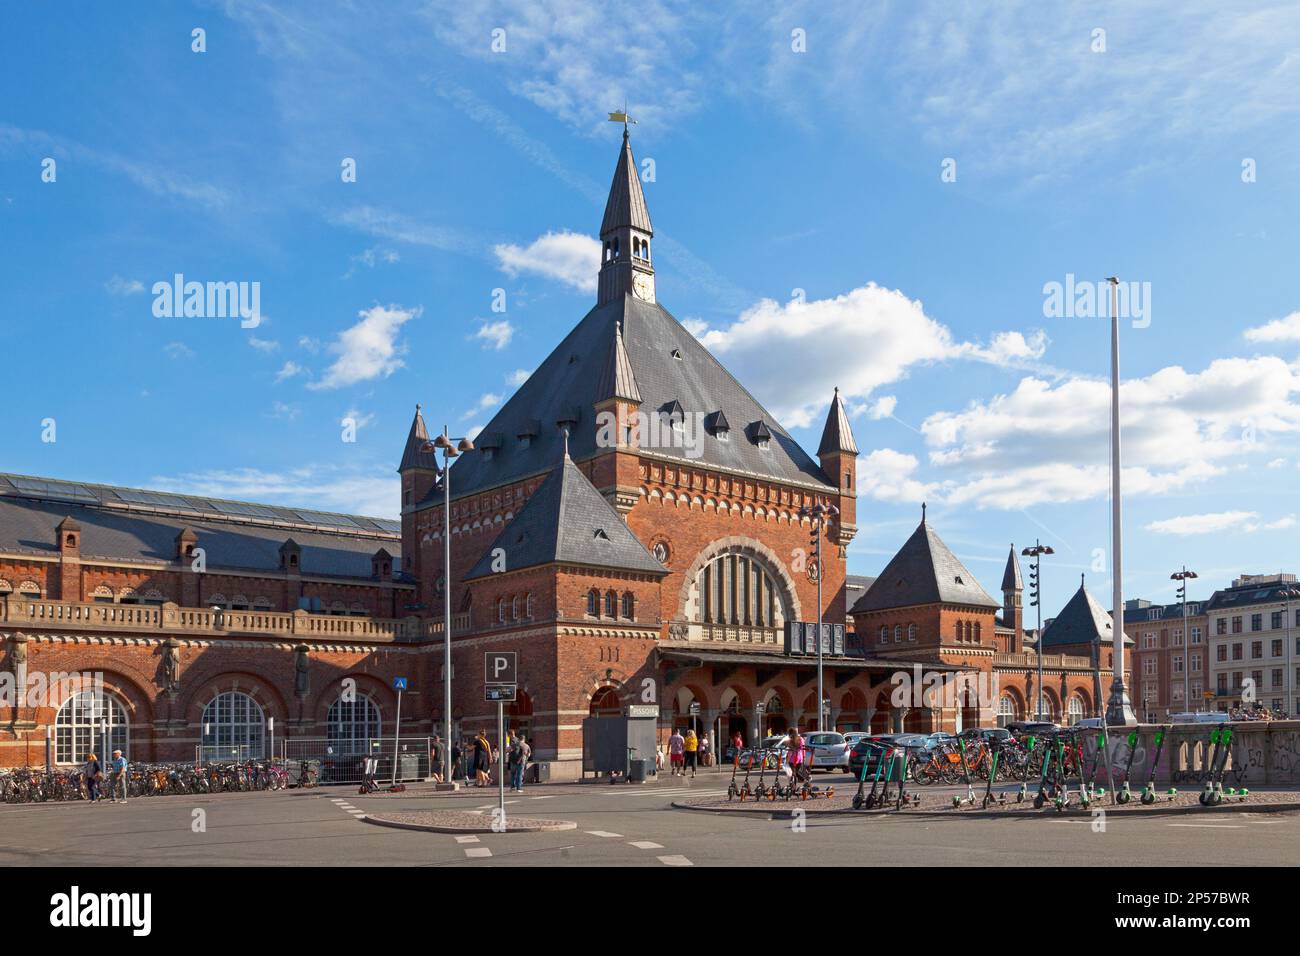 Copenhagen, Denmark - June 28 2019: The Copenhagen Central Station (Danish: Københavns Hovedbanegård) is the main railway station in the capital. Stock Photo